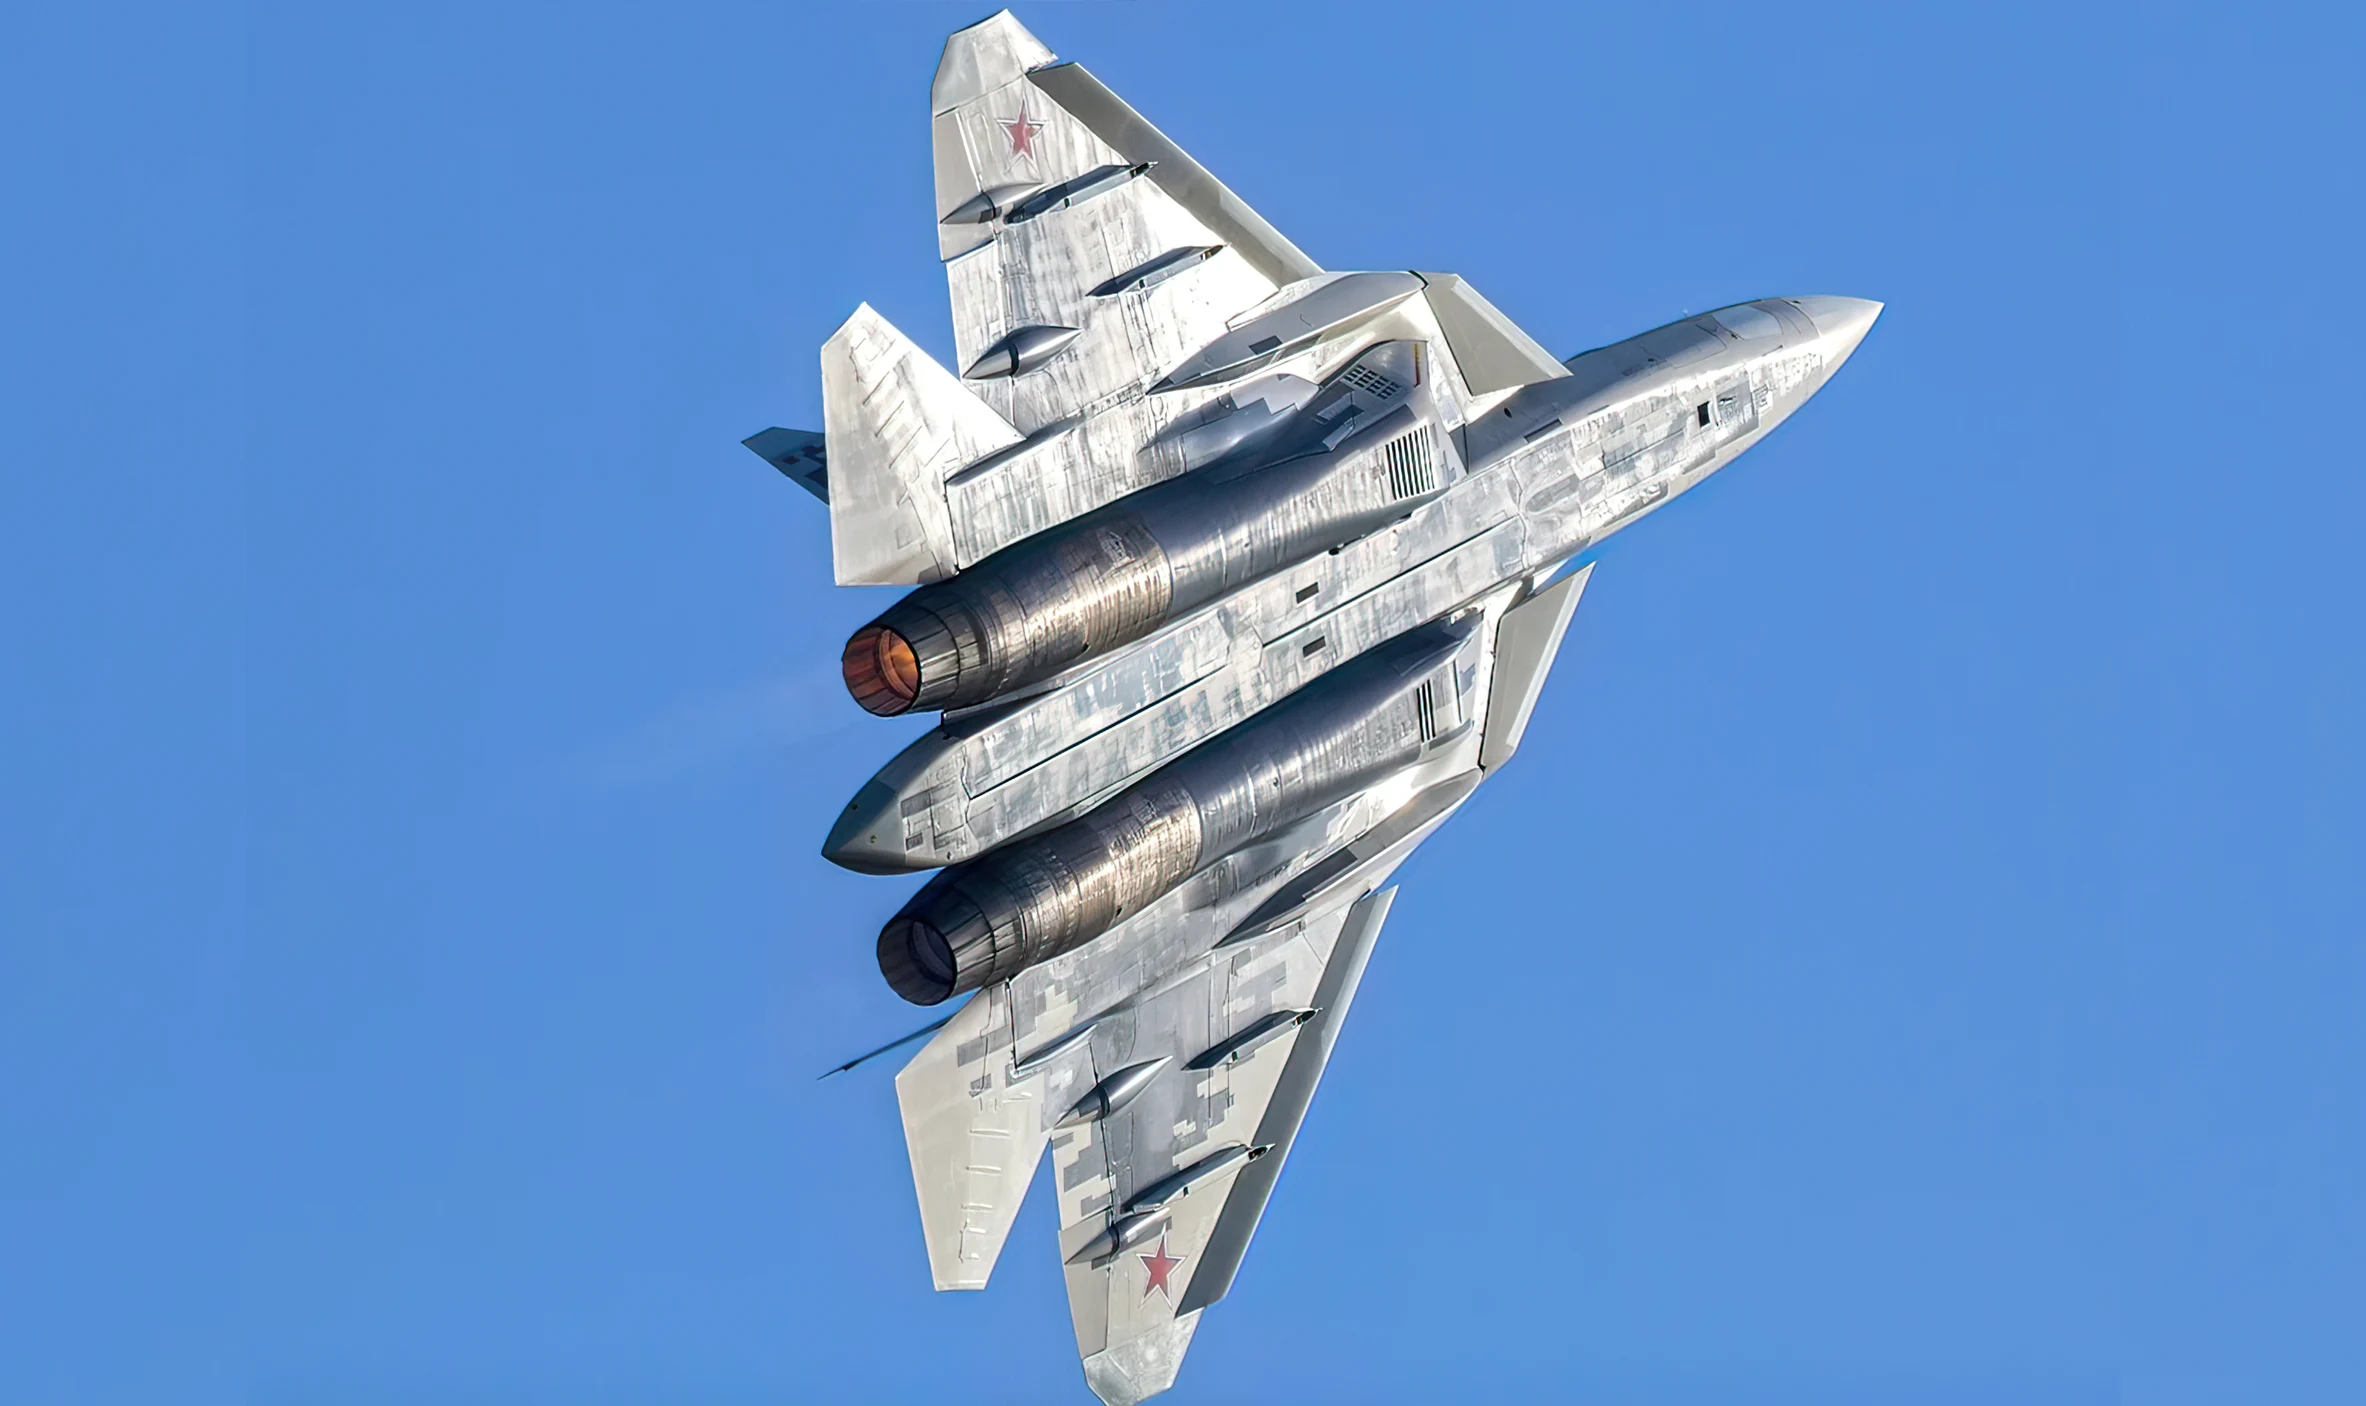 Problemas ineludibles en el desarrollo del caza Su-57 Felon